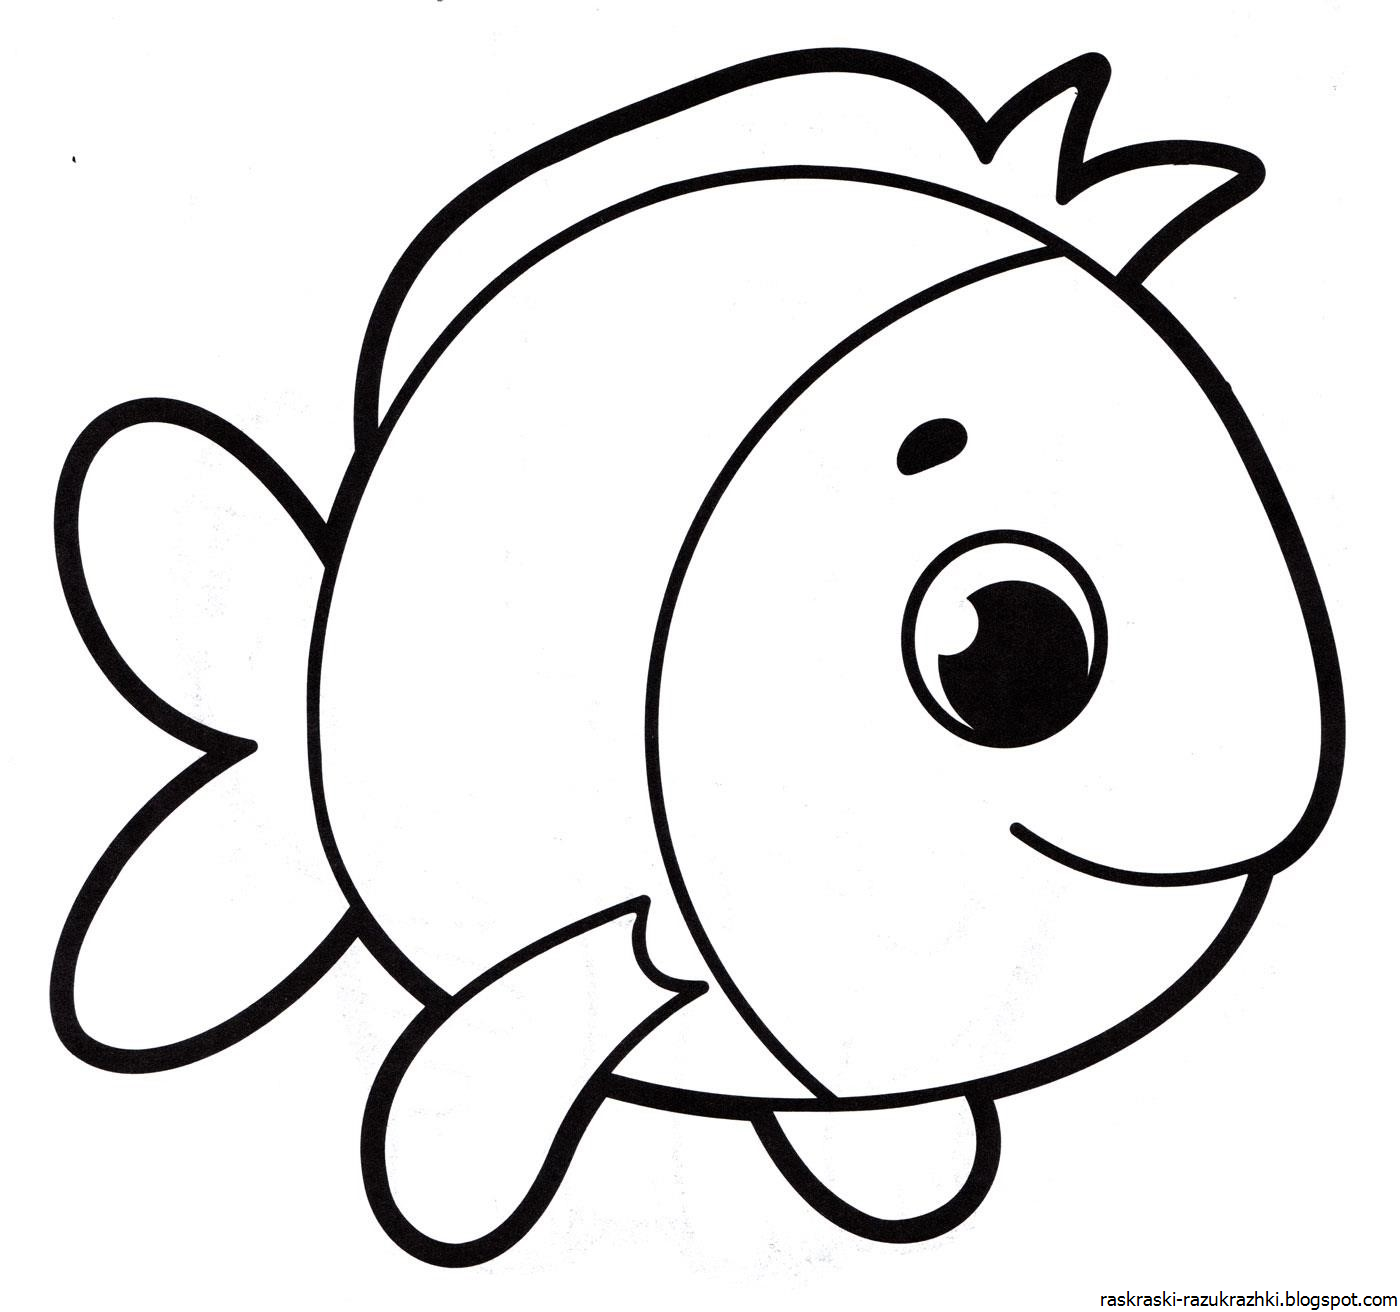 Раскраска рыбка. Рыбка раскраска для детей. Рыбка для раскрашивания для детей. Рыбка картинка для детей раскраска. Раскраски рыбки для детей 3 4 лет